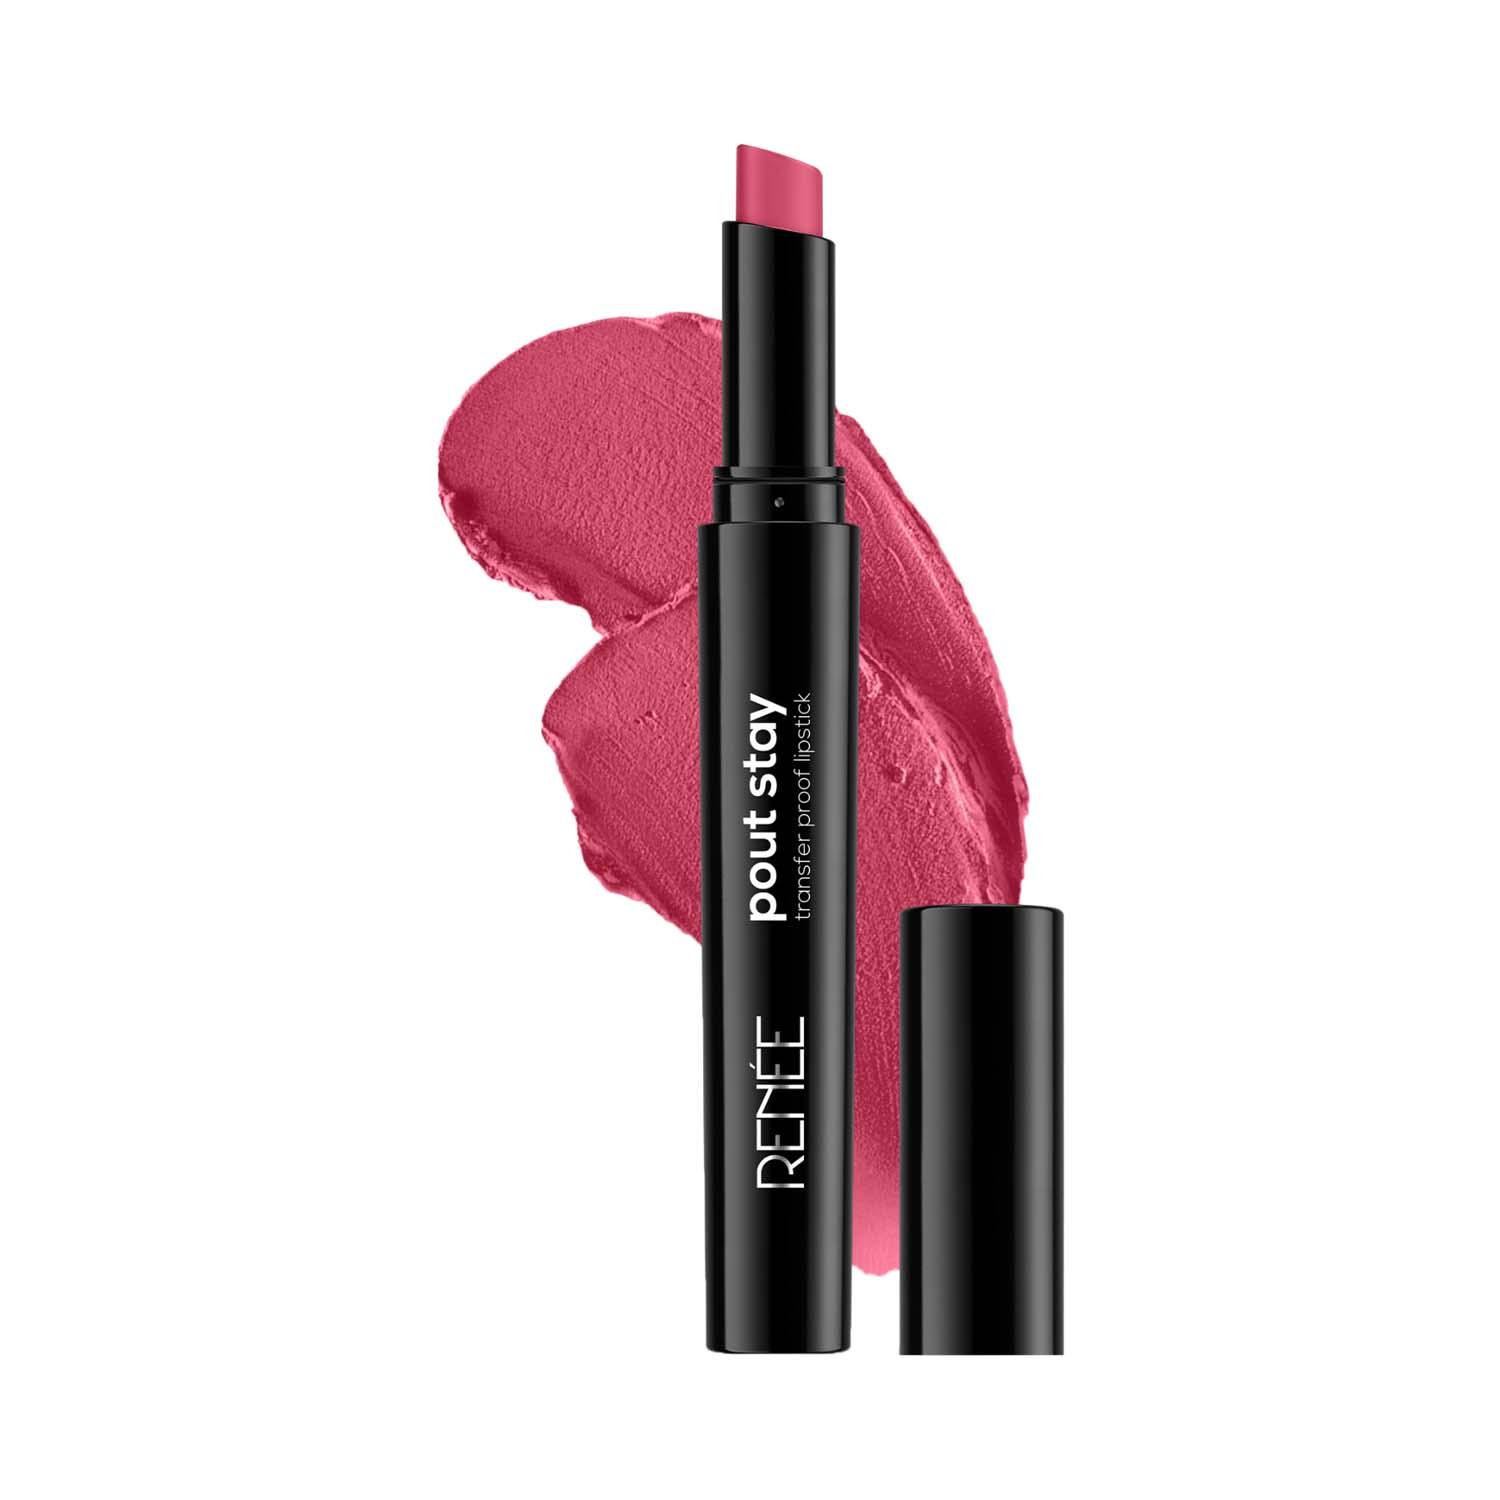 RENEE | RENEE Poutstay Transfer Proof Lipstick - 06 Ava (2 g)